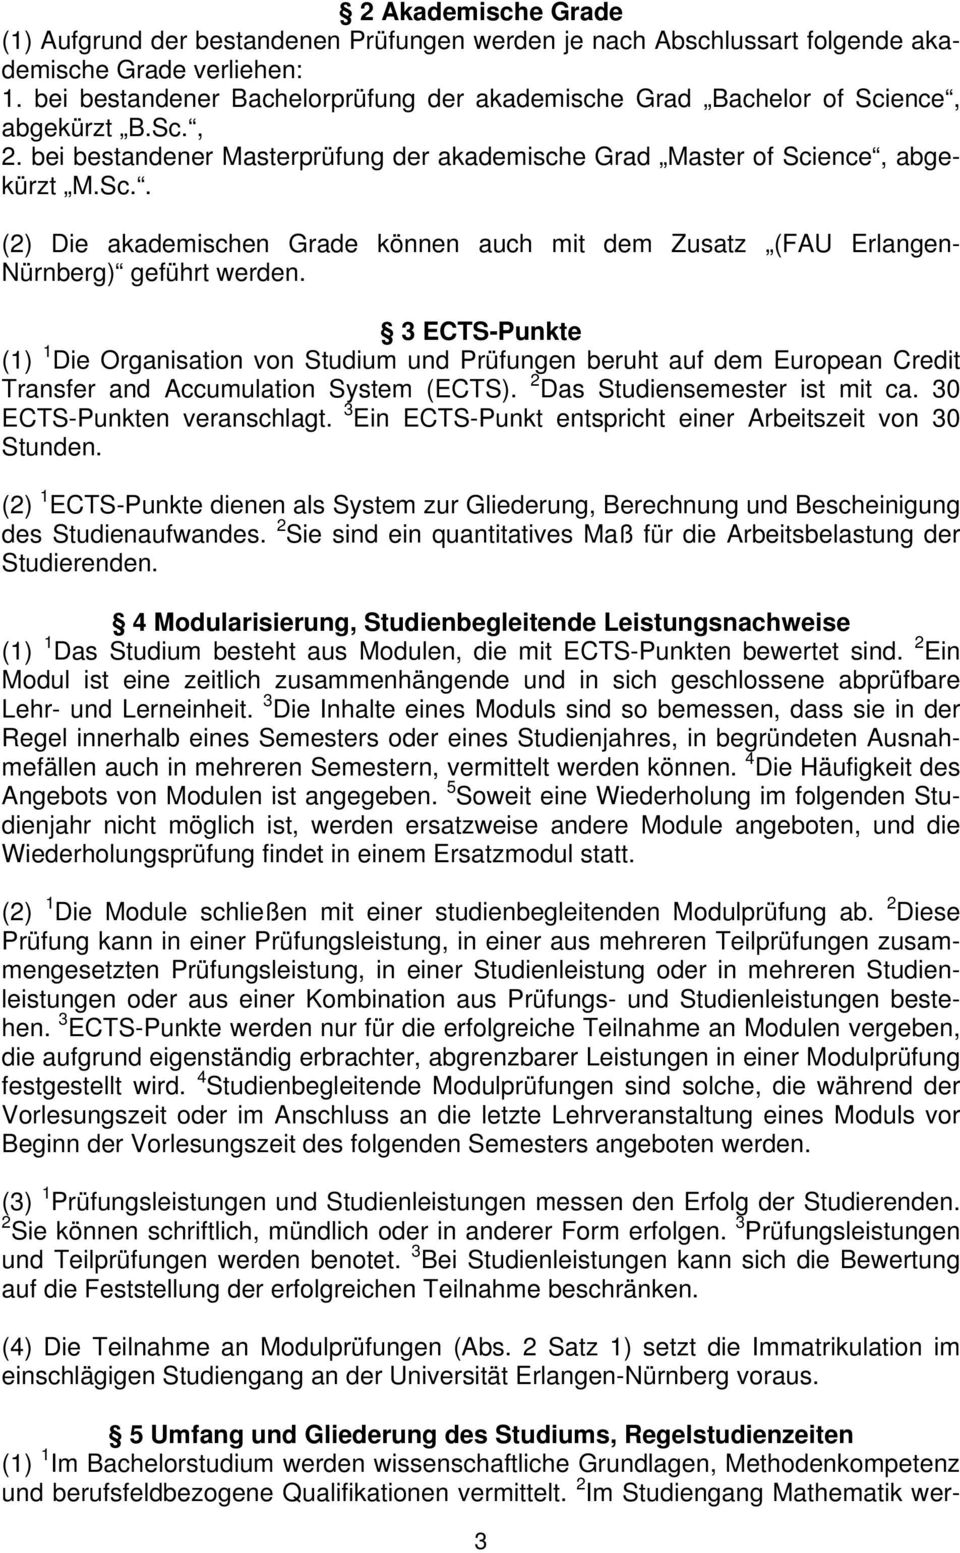 3 ECTS-Punkte (1) 1 Die Organisation von Studium und Prüfungen beruht auf dem European Credit Transfer and Accumulation System (ECTS). 2 Das Studiensemester ist mit ca. 30 ECTS-Punkten veranschlagt.